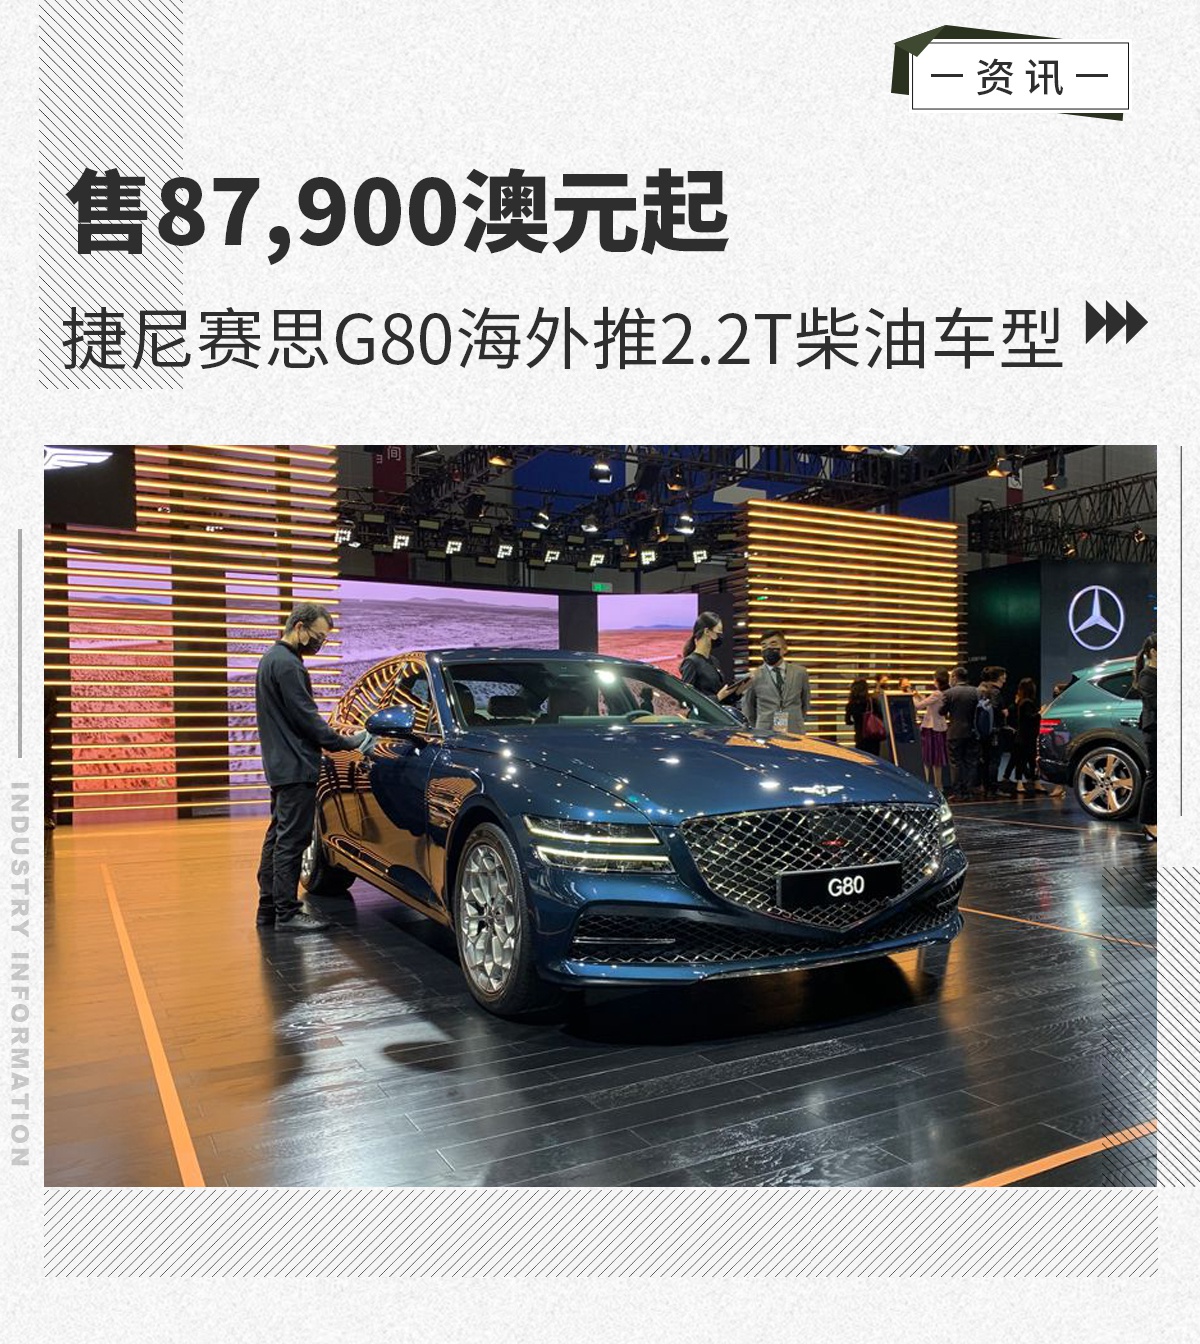 售87,900澳元起 捷尼赛思G80海外推2.2T柴油车型